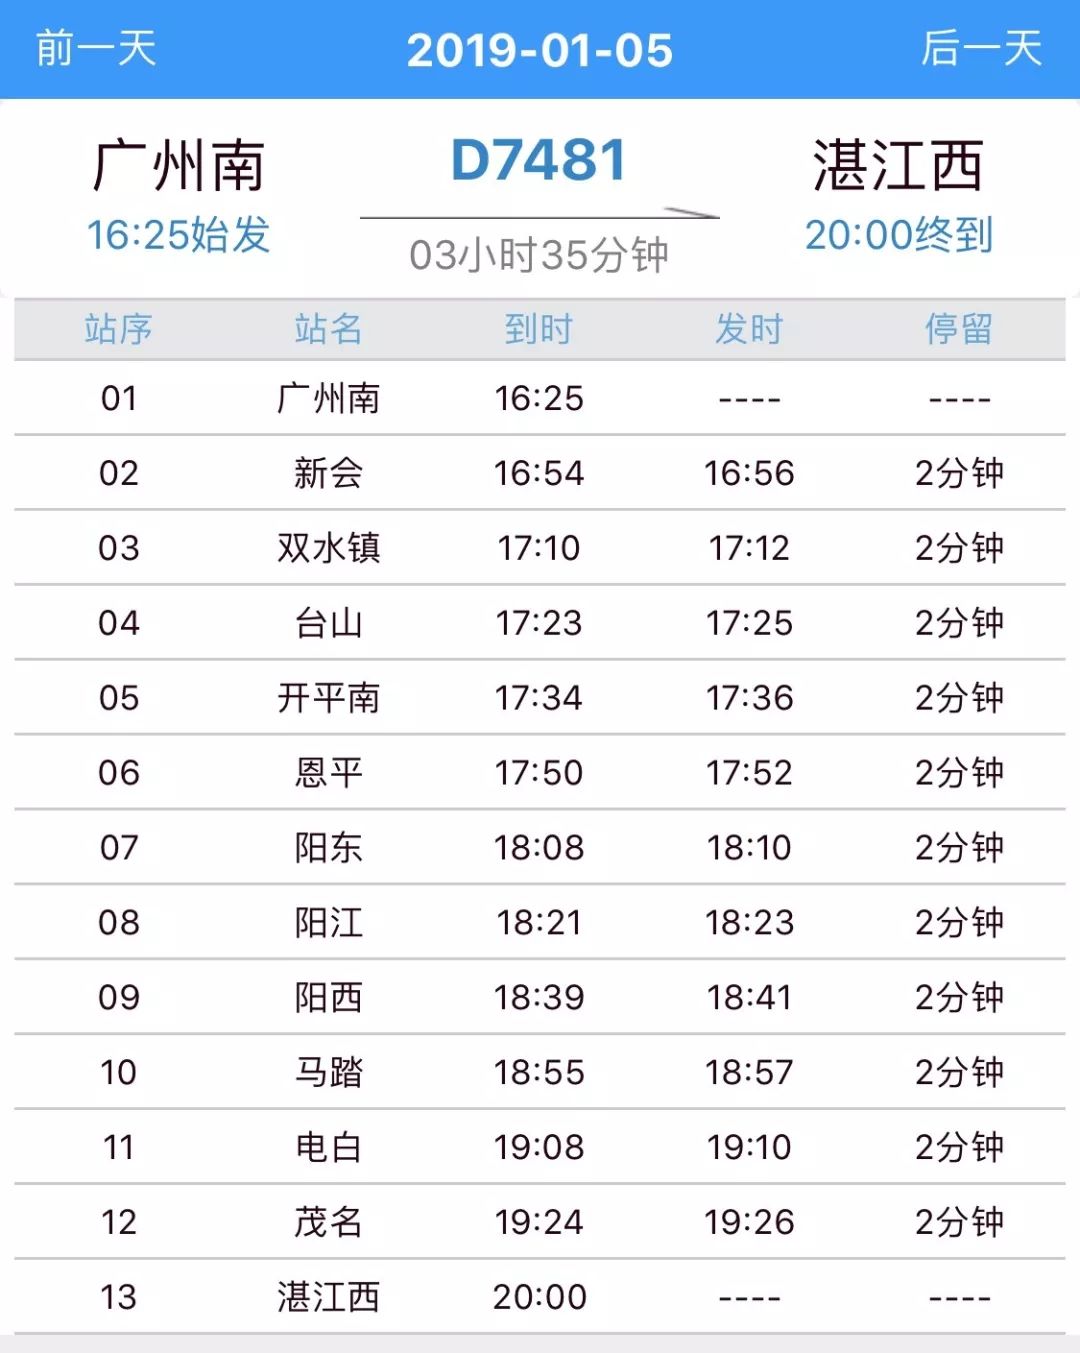 重磅明年湛江人坐高铁可以去更多地方广铁2019年新列车运行图发布